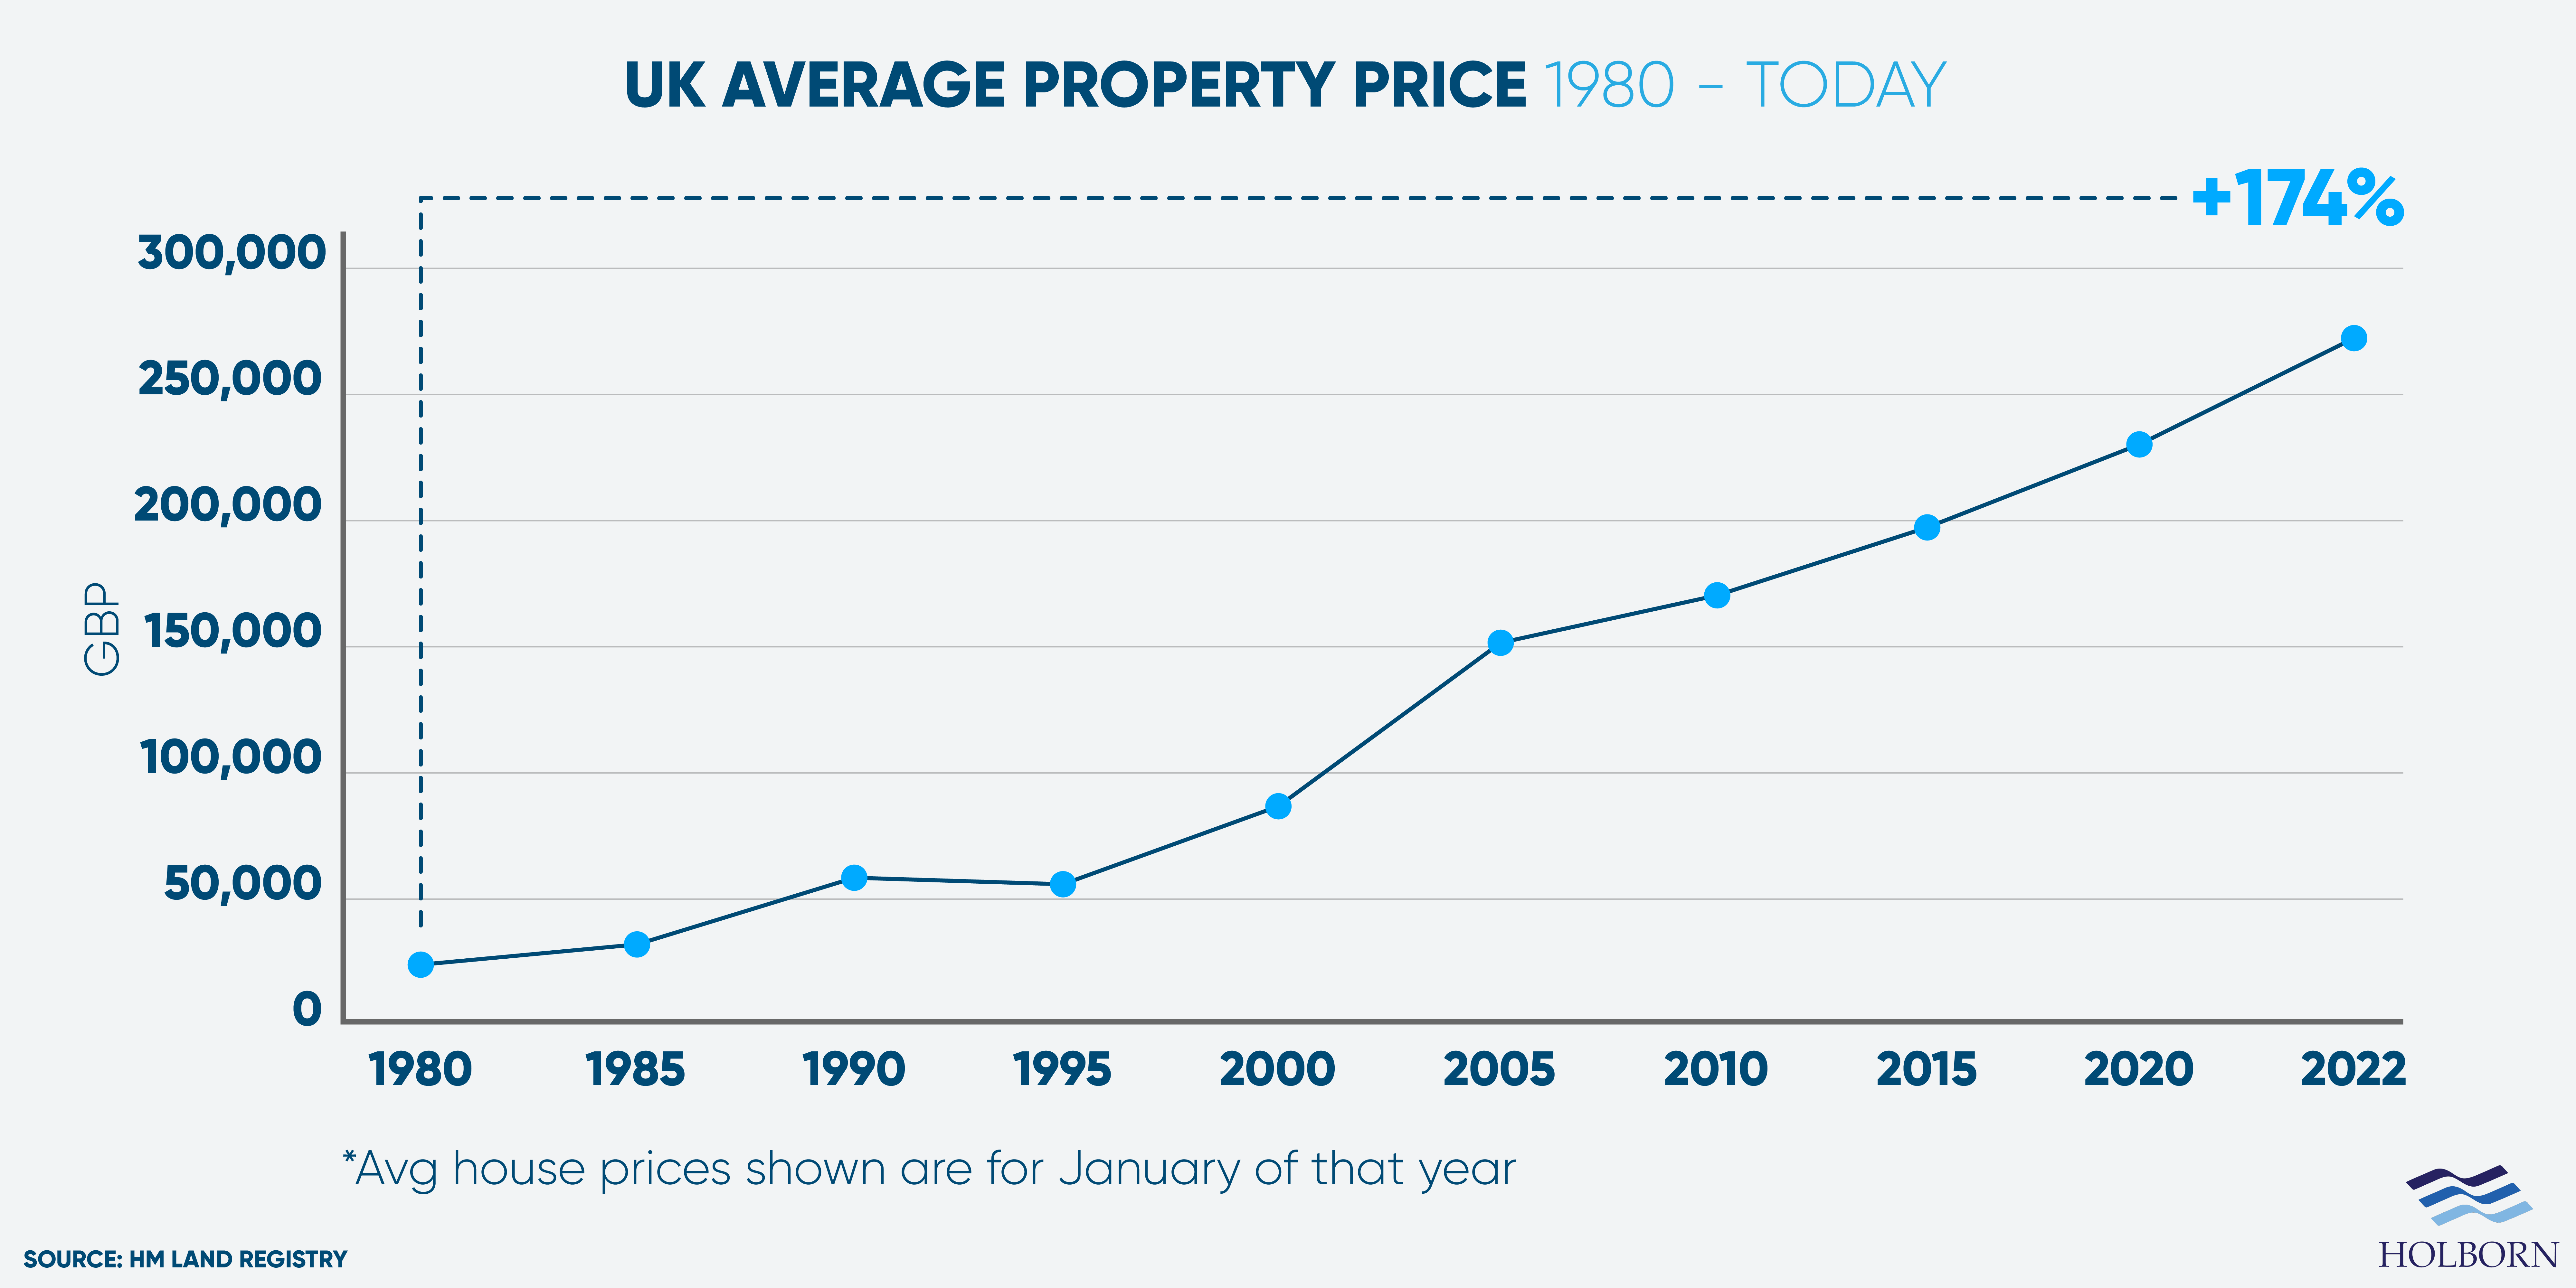 Average property price in the UK